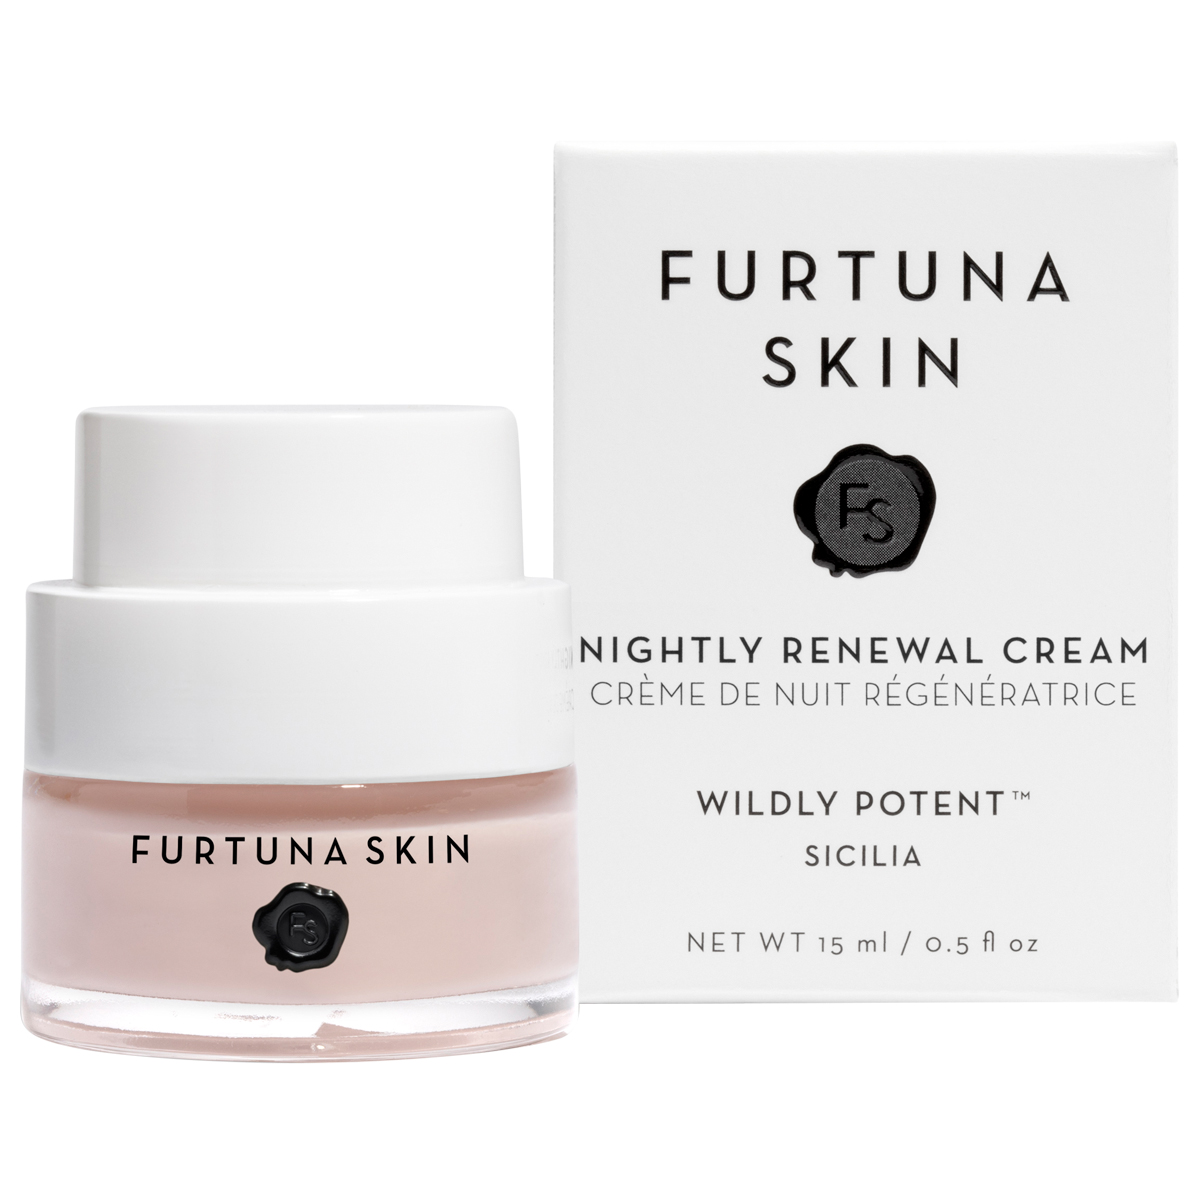 Furtuna Skin - Fior di Luna Nightly Renewal Cream